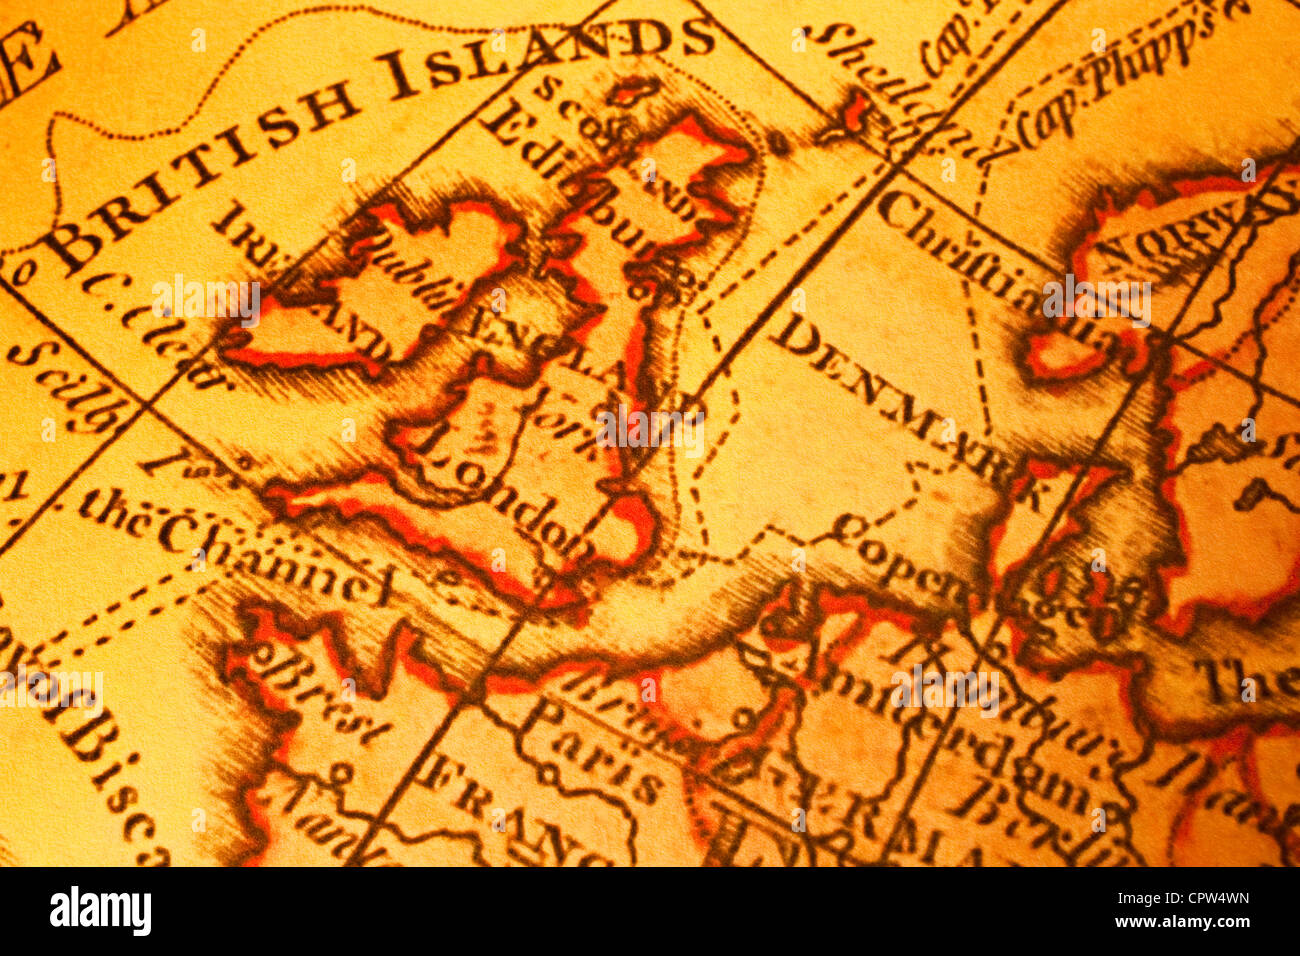 Carte ancienne de Bretagne Îles Britanniques UK United Kngdom et l'Europe du Nord. La carte est de 1786 et est en dehors du droit d'auteur. Banque D'Images